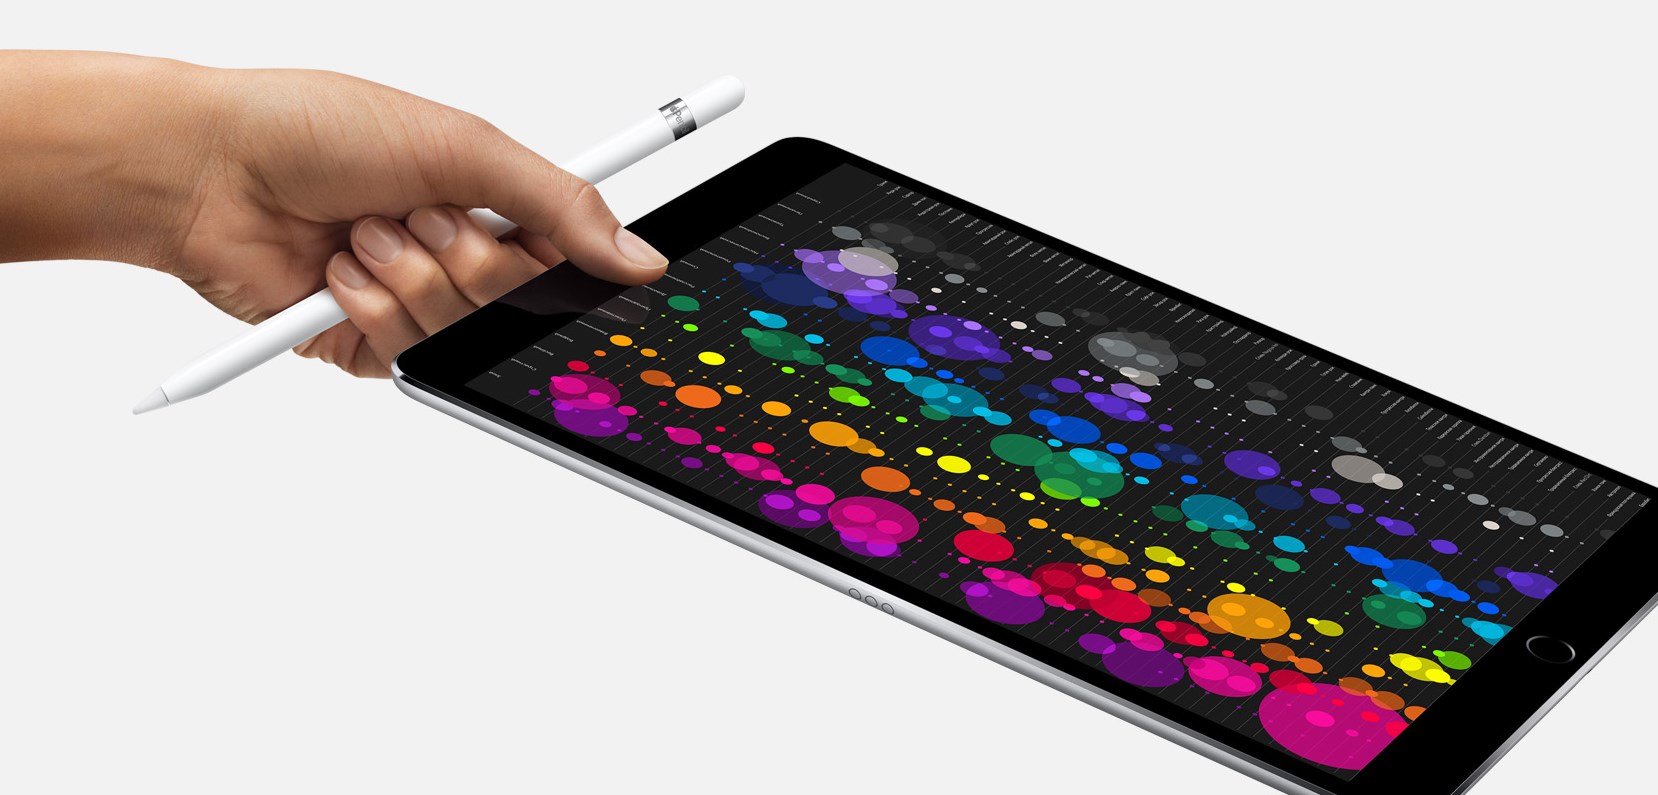 iPad Pro 12.9 - Любое дело сделается лучше.